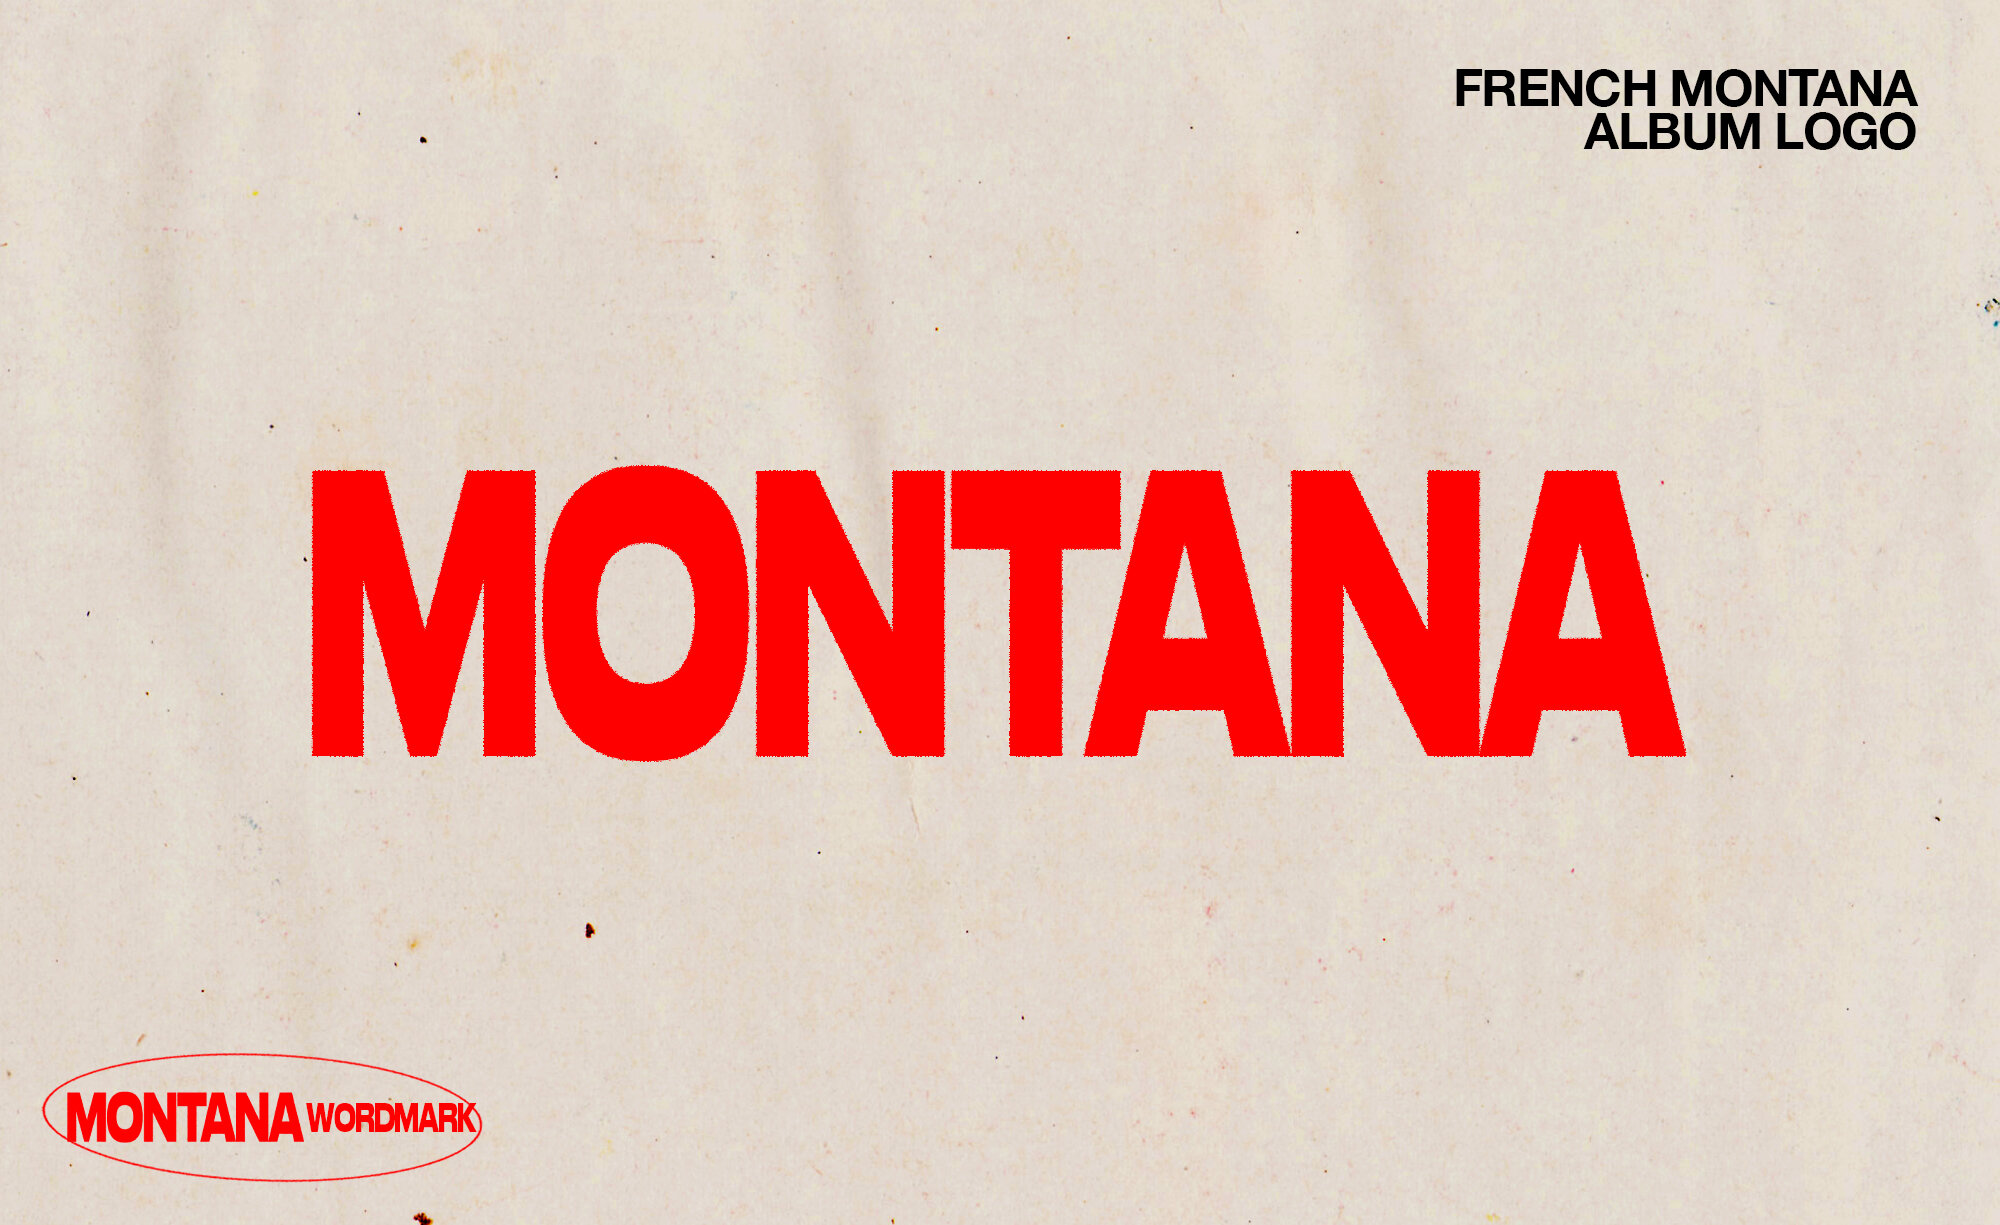 French Montana - 'MONTANA' Album Logo Design